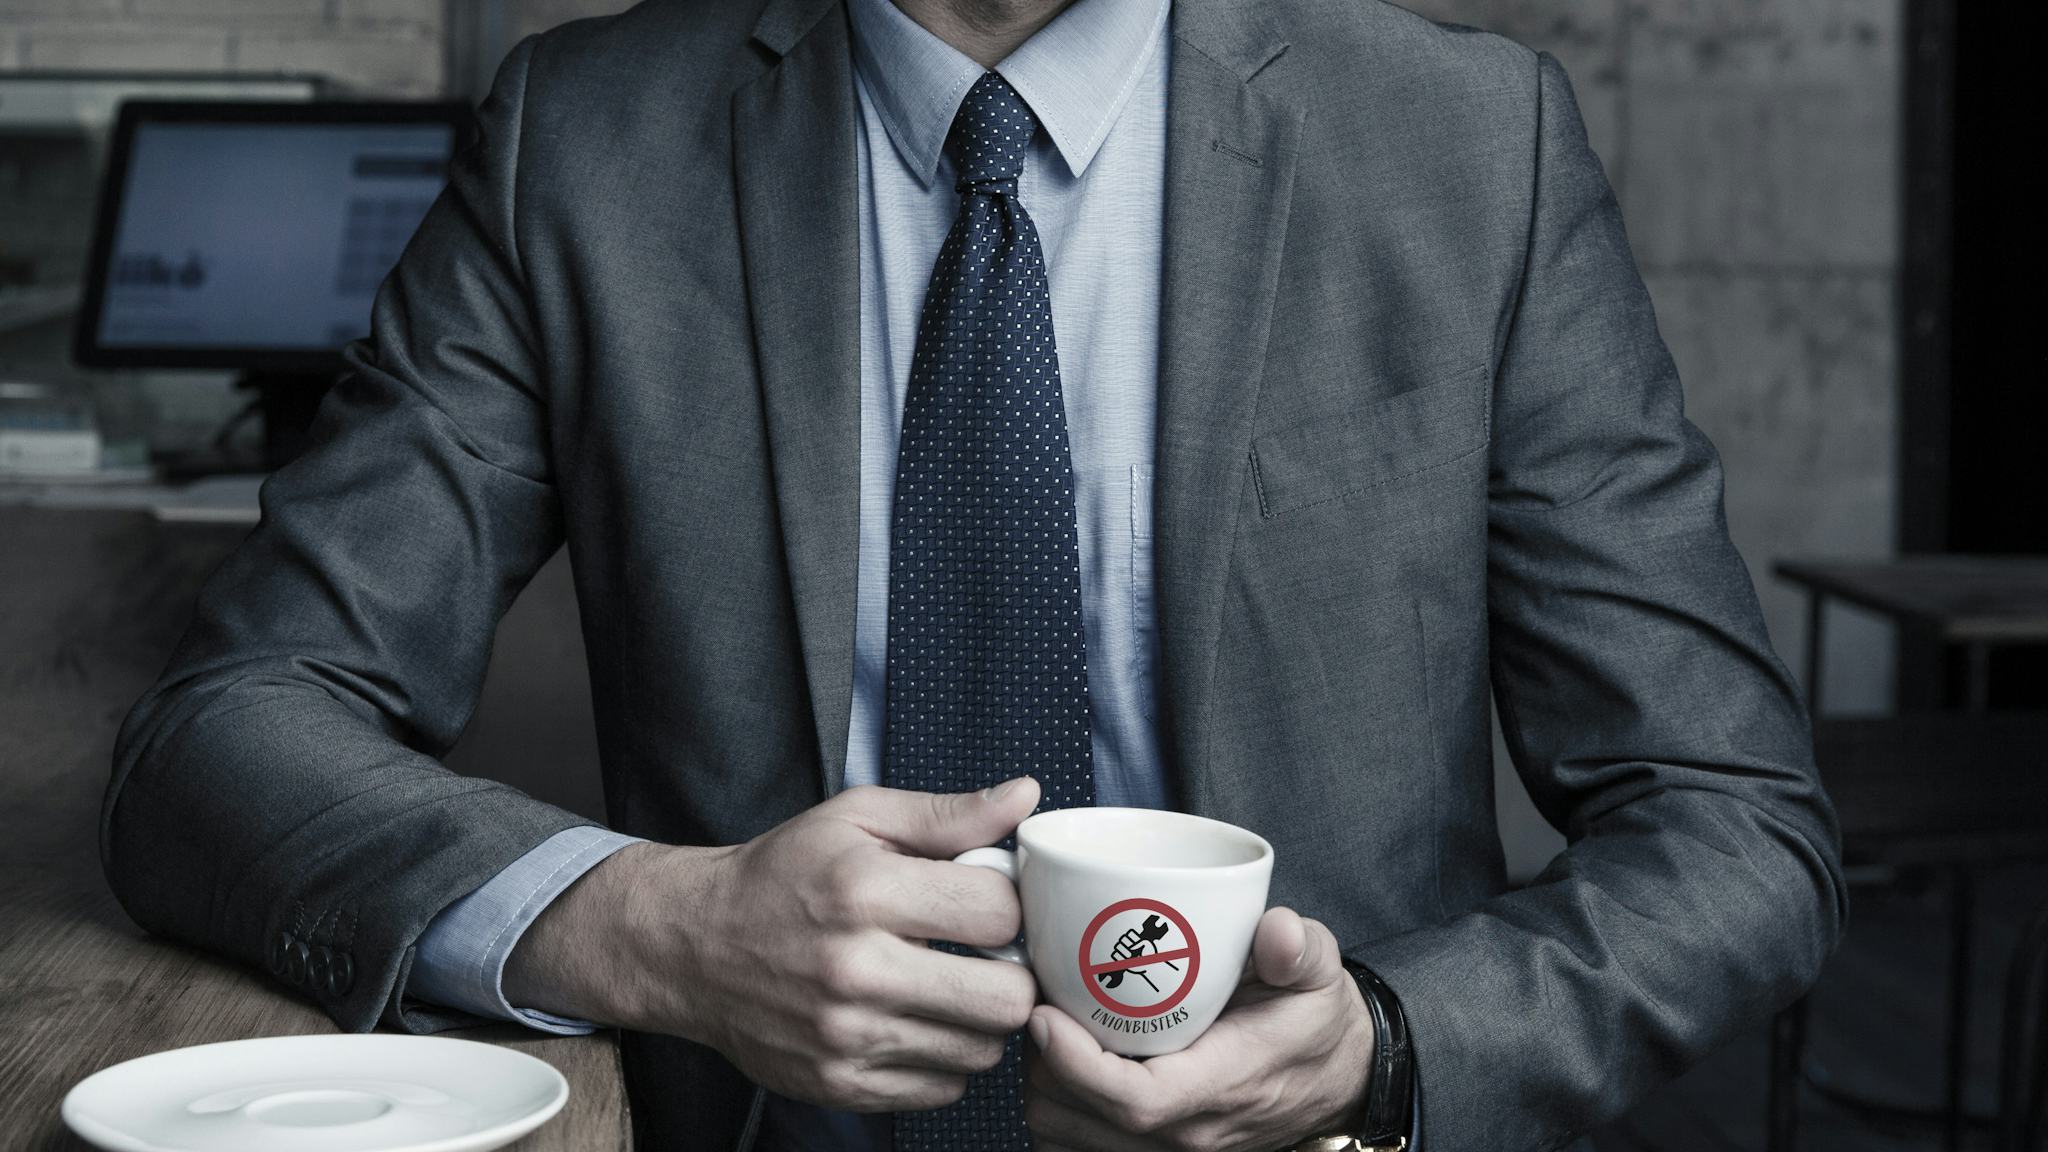 En man i grå kostym, vars ansikte inte syns, håller en kaffekopp med texten "Union busters".